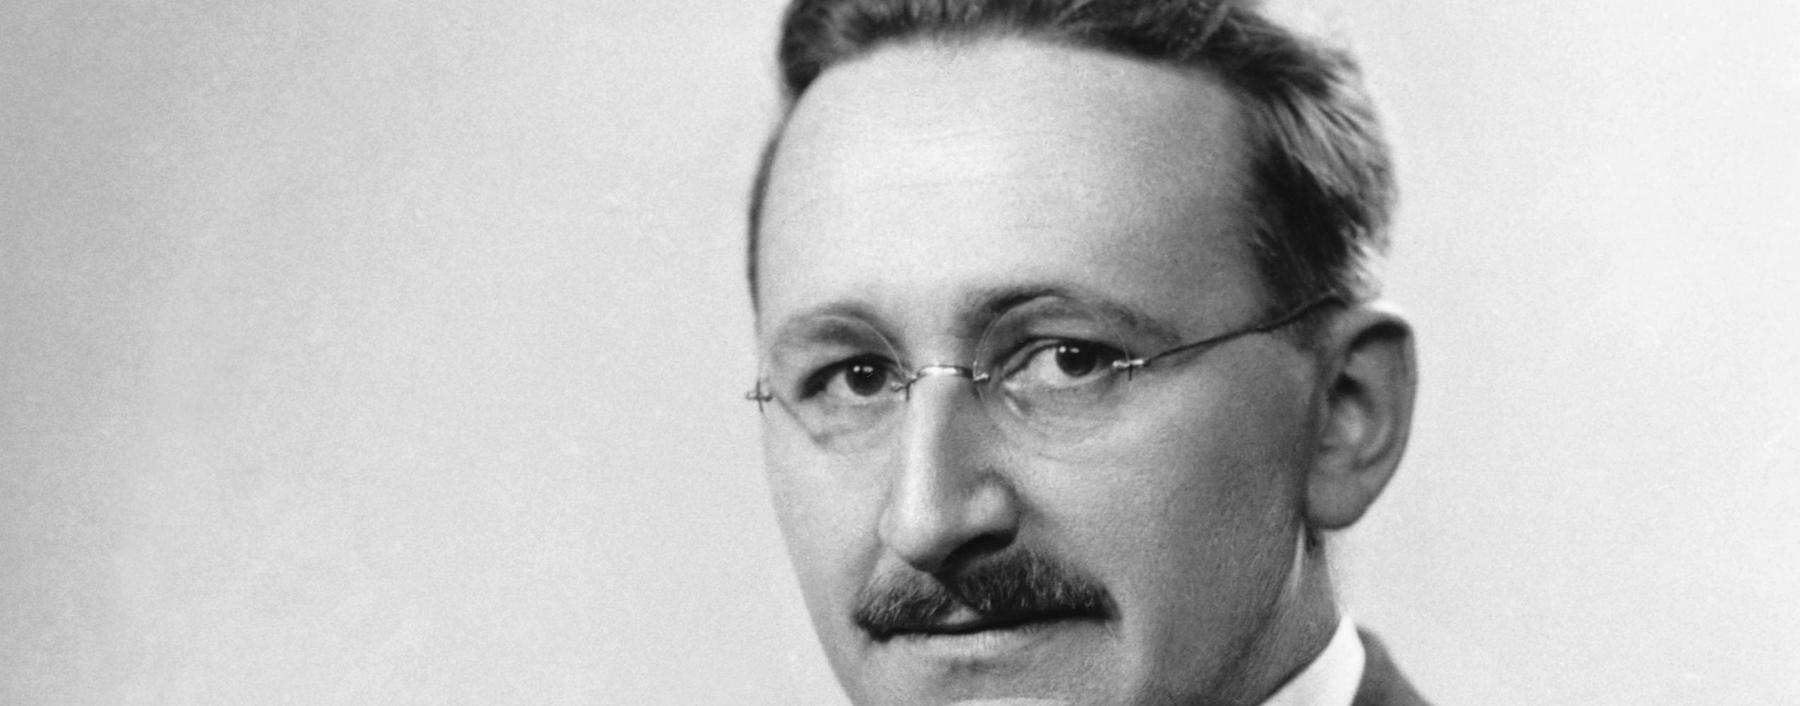 Freie Preise sind laut Friedrich August von Hayek der effizienteste Weg, all das Wissen in einer Gesellschaft zu nutzen.